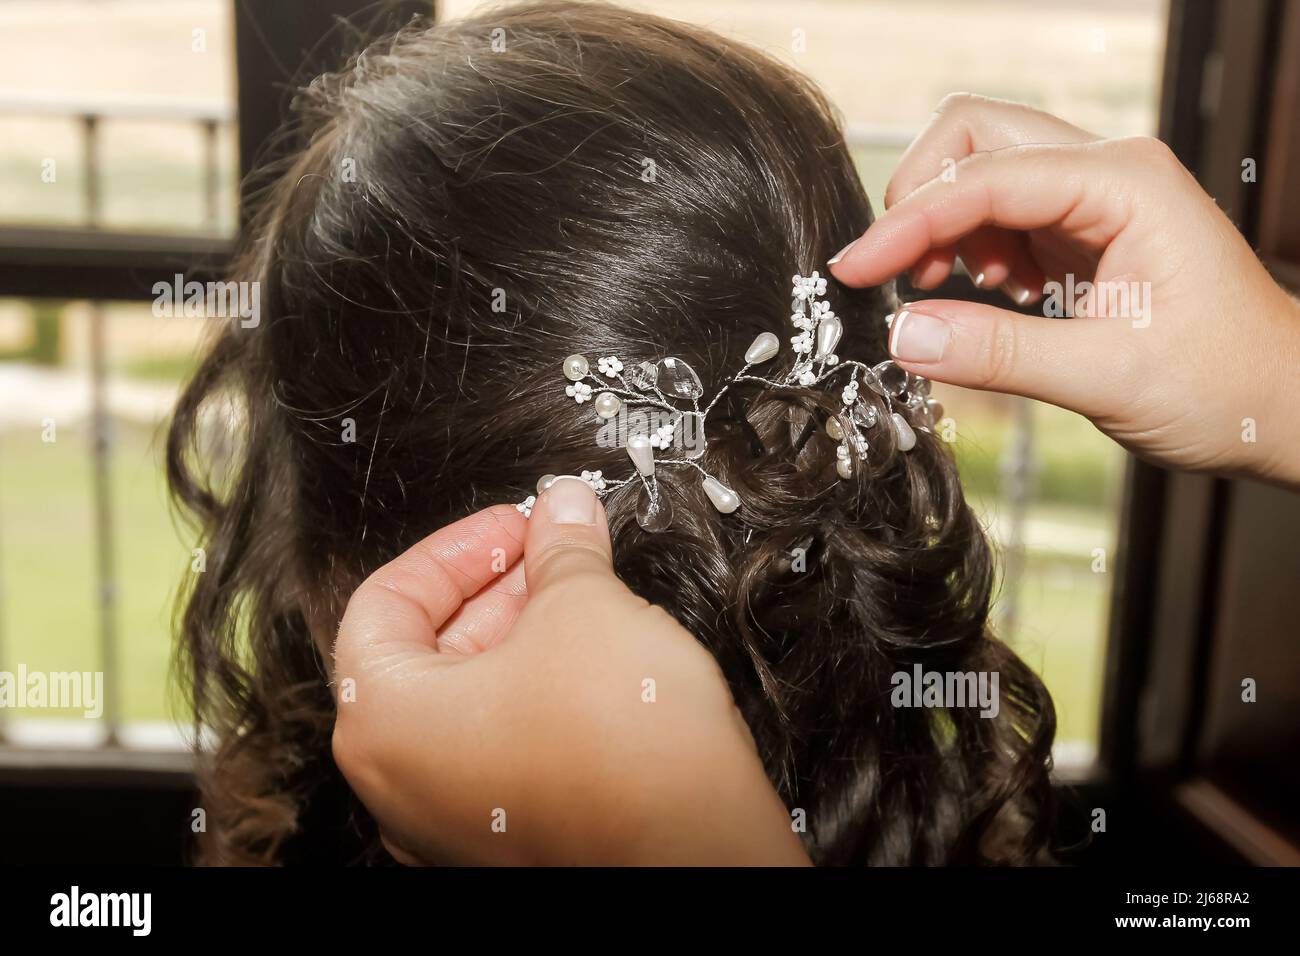 Schöner Haarschmuck, der auf den Kopf einer Frau mit dunklem Haar gelegt wird. Stockfoto